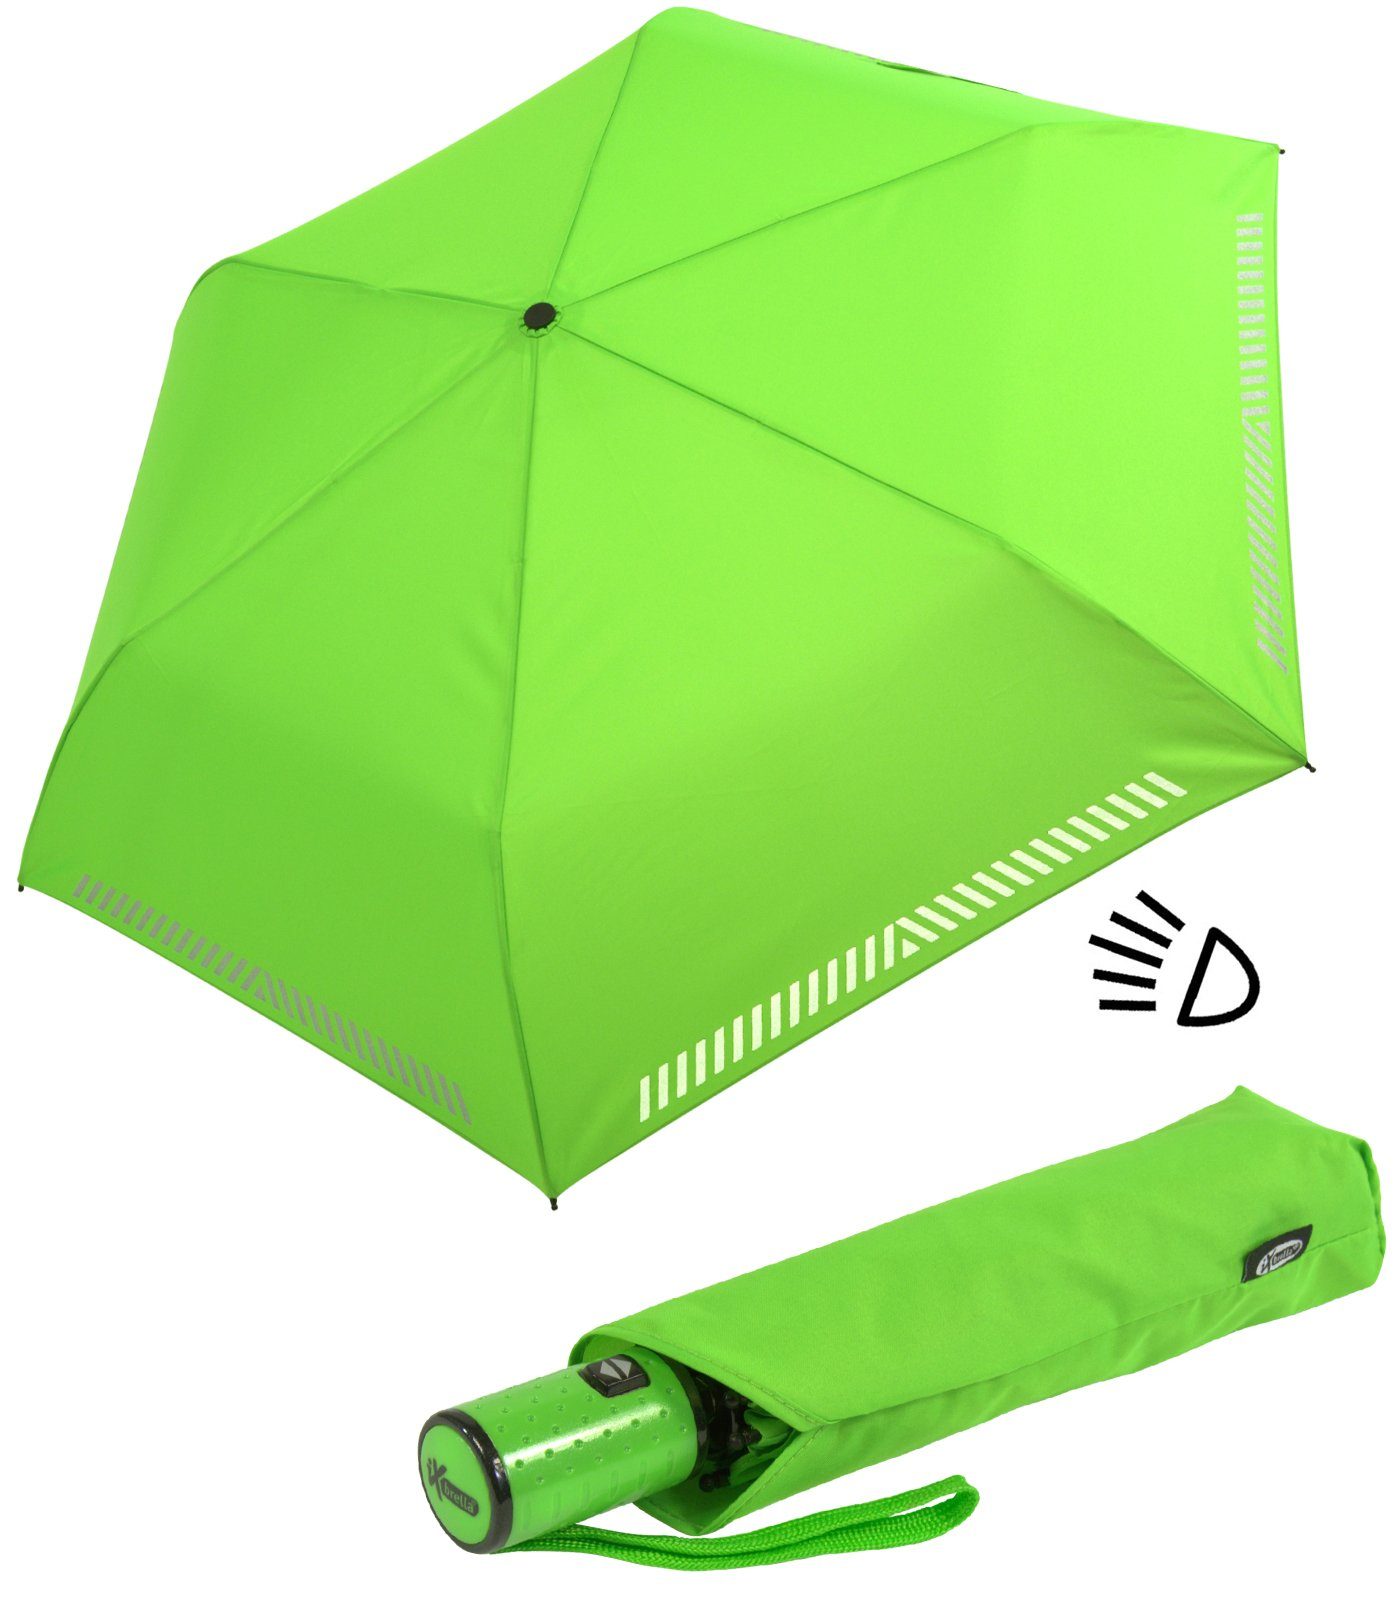 iX-brella Taschenregenschirm Kinderschirm mit Reflex-Streifen reflektierend, Sicherheit - Auf-Zu-Automatik, durch grün neon